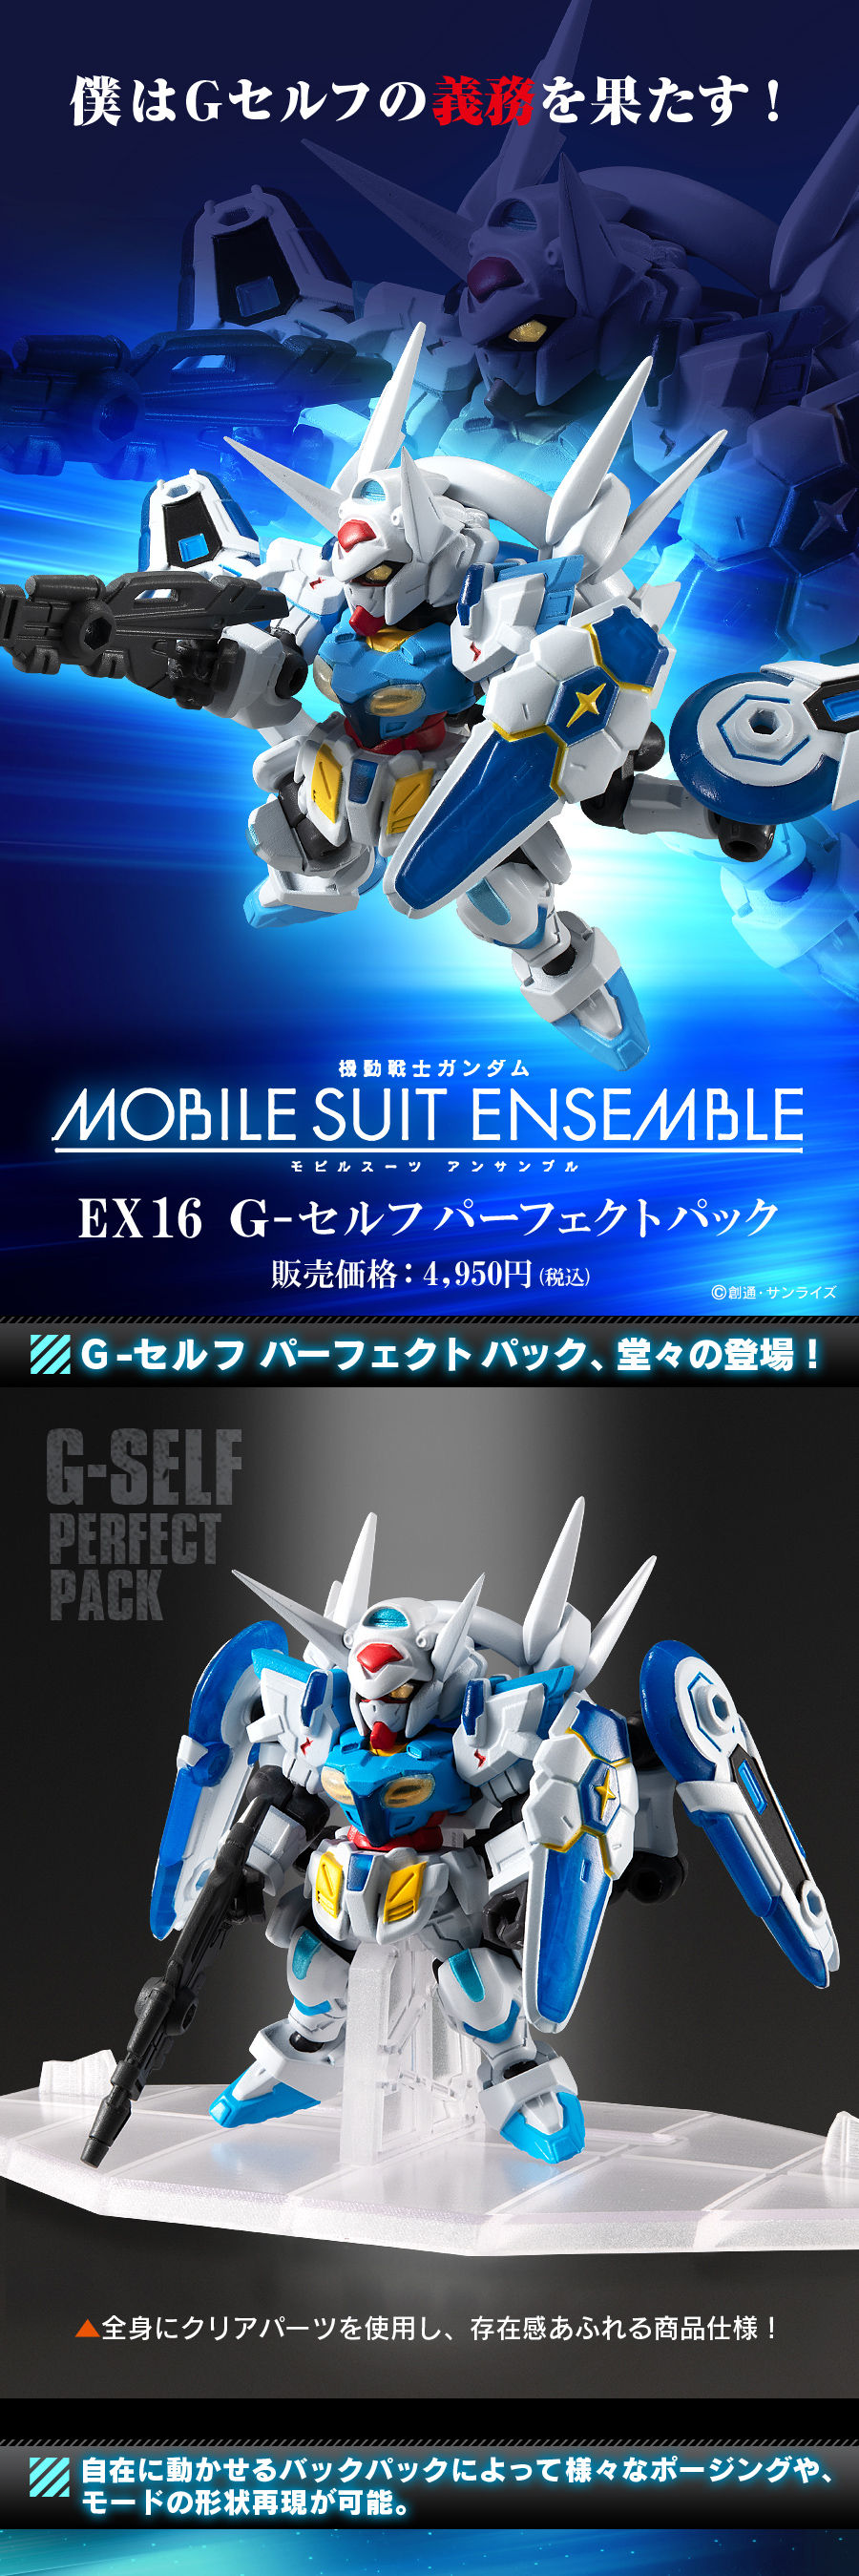 機動戦士ガンダム Mobile Suit Ensemble Ex16 G セルフパーフェクトパック ガンダム Gのレコンギスタ 趣味 コレクション バンダイナムコグループ公式通販サイト